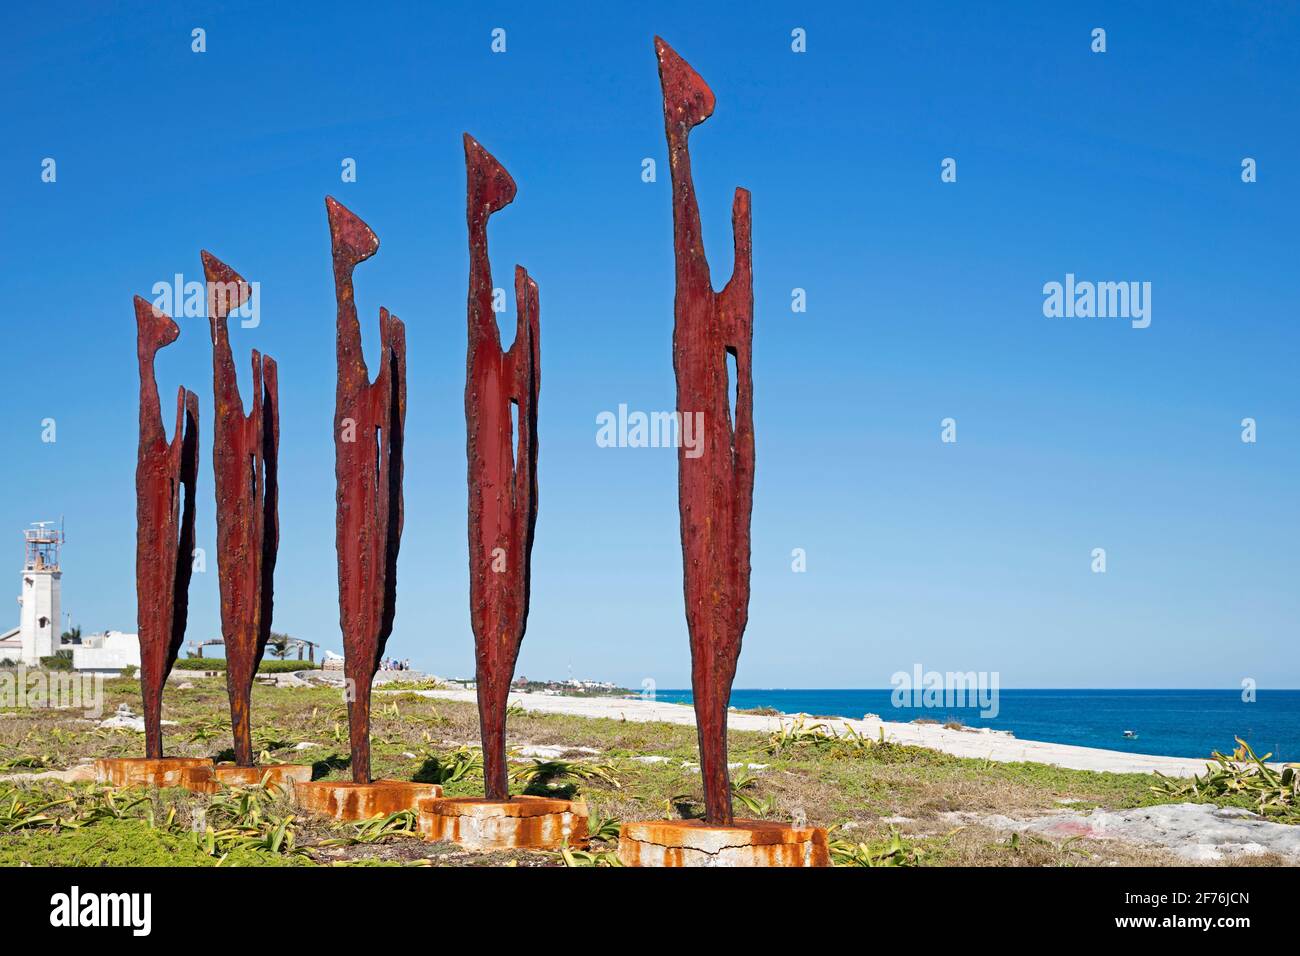 Art contemporain dans le jardin de sculptures de Punta sur Isla Mujeres, île dans l'état mexicain Quintana Roo, côte nord de la péninsule de Yucatán, Mexique Banque D'Images